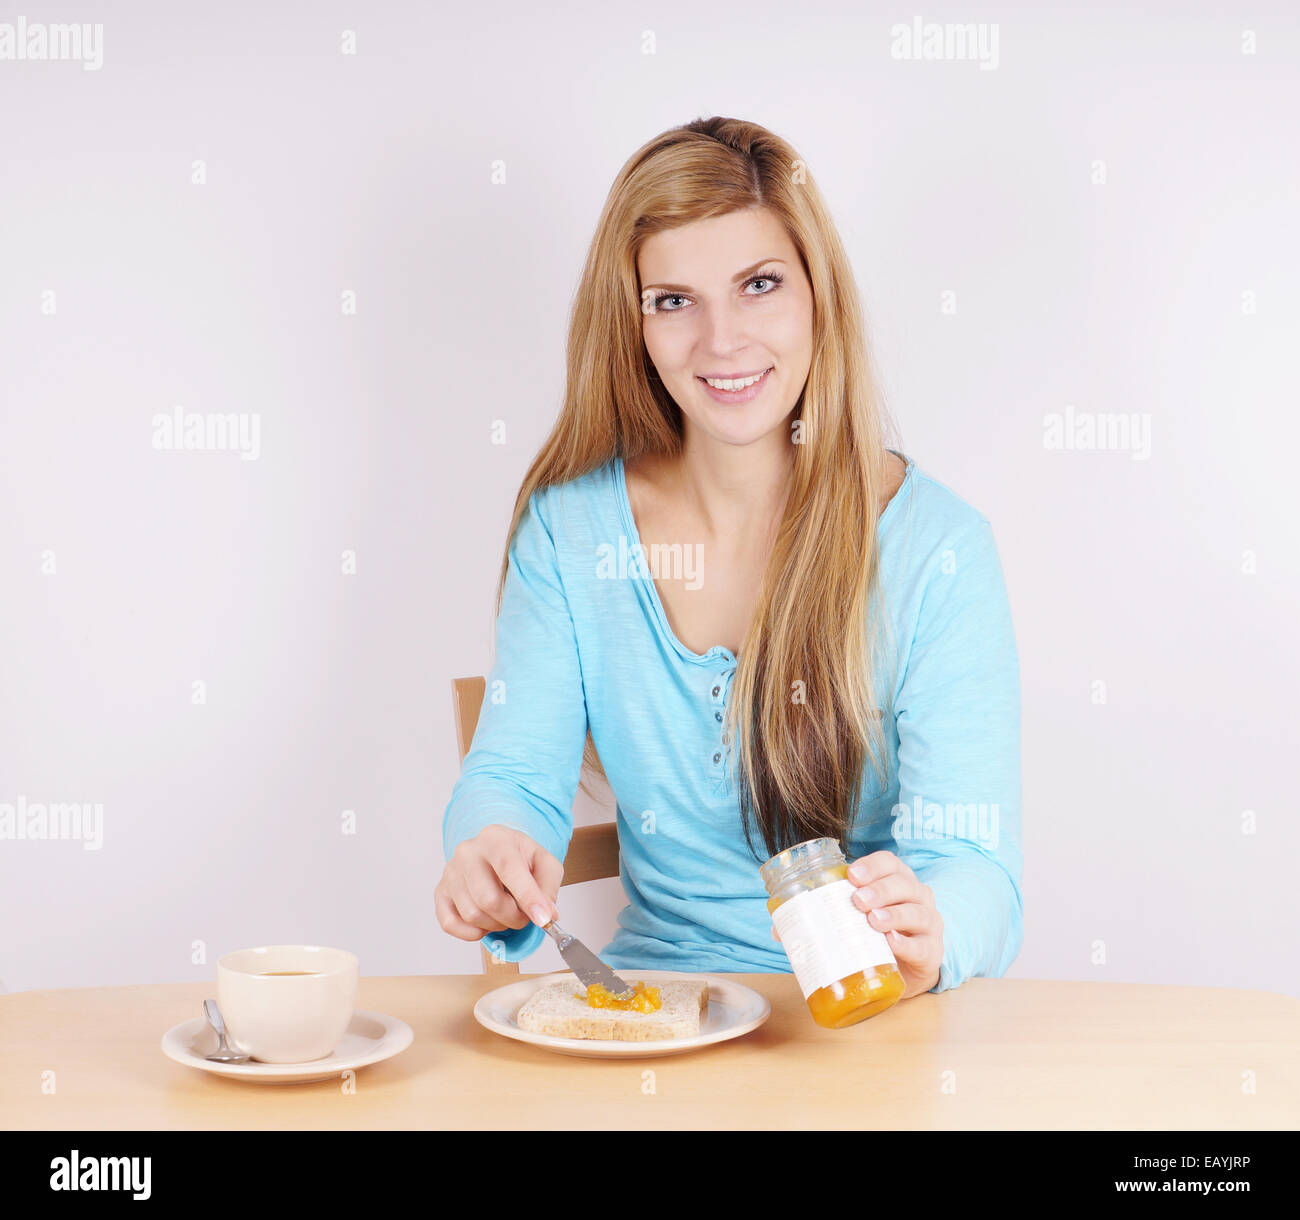 junge Frau, die Verbreitung von Marmelade auf ihrem Toast am Frühstückstisch Stockfoto